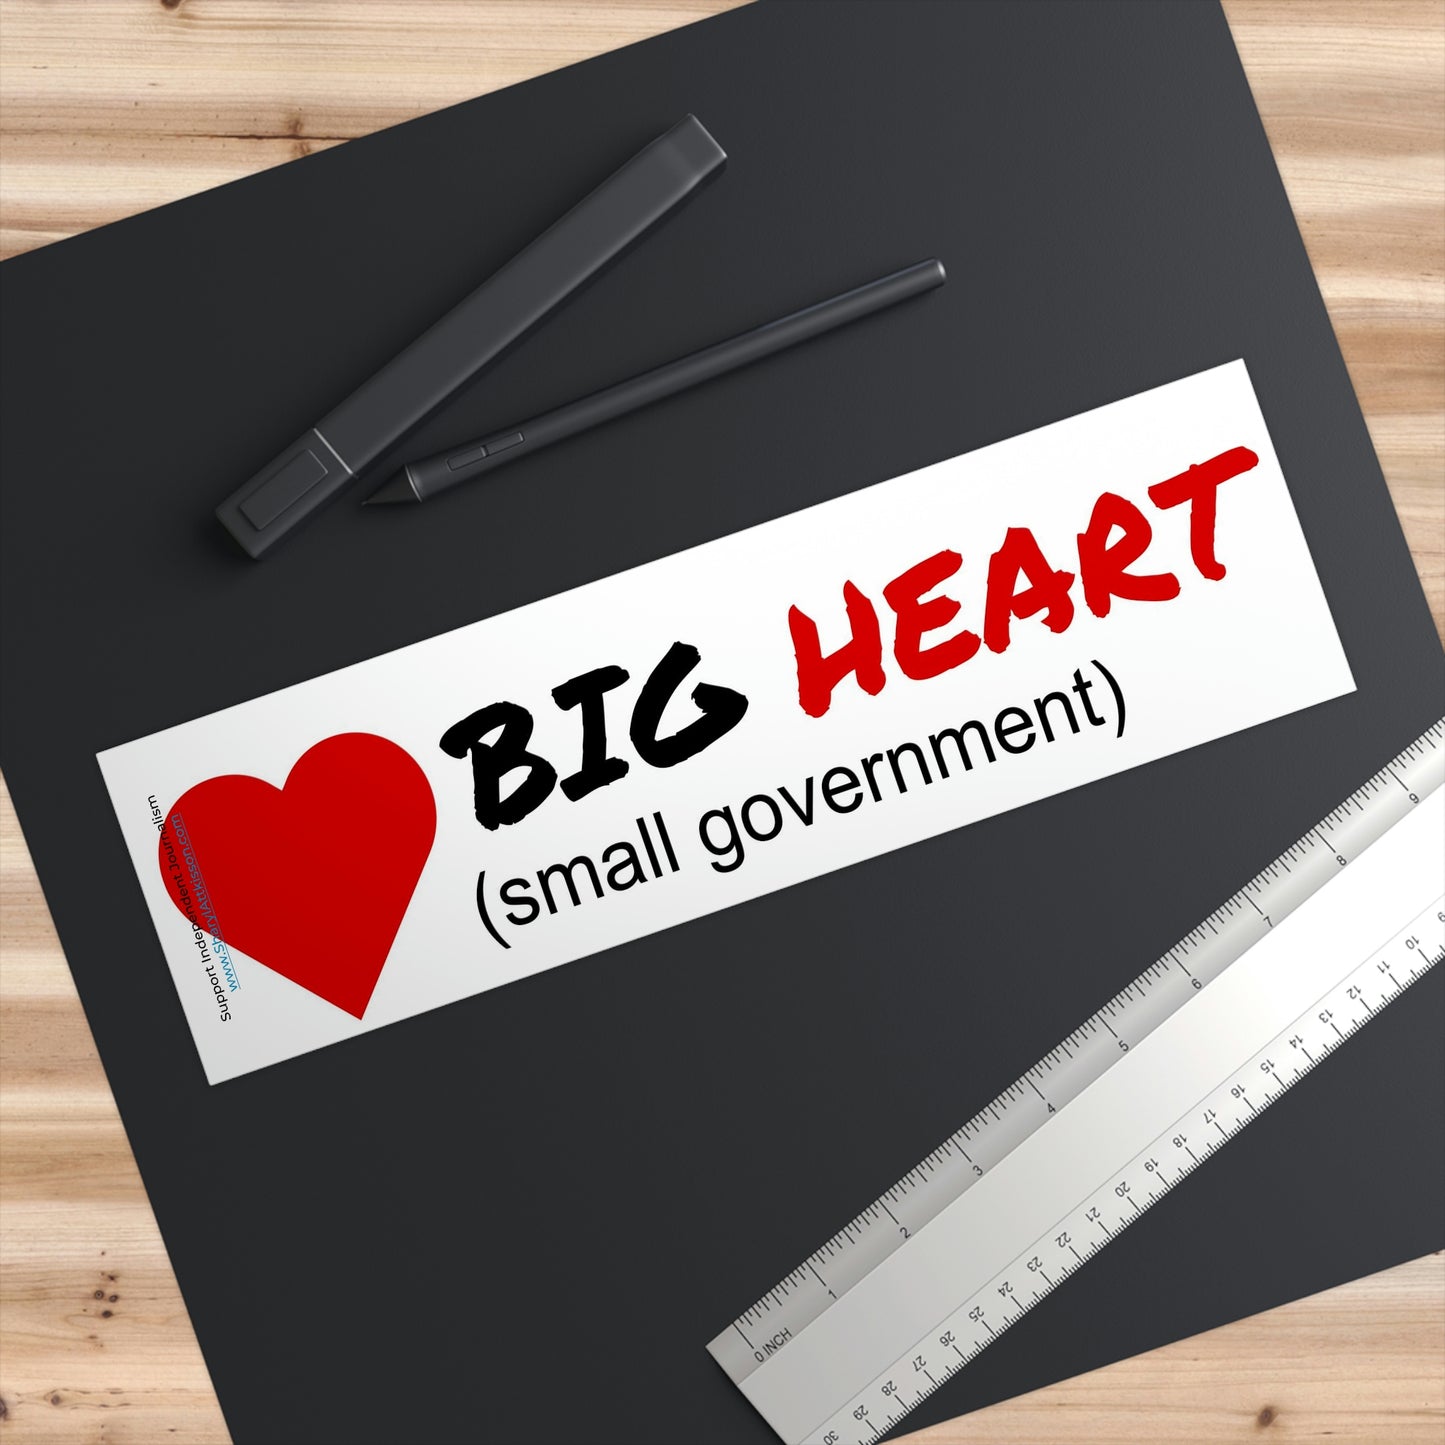 'Big Heart (small government)' Bumper Sticker